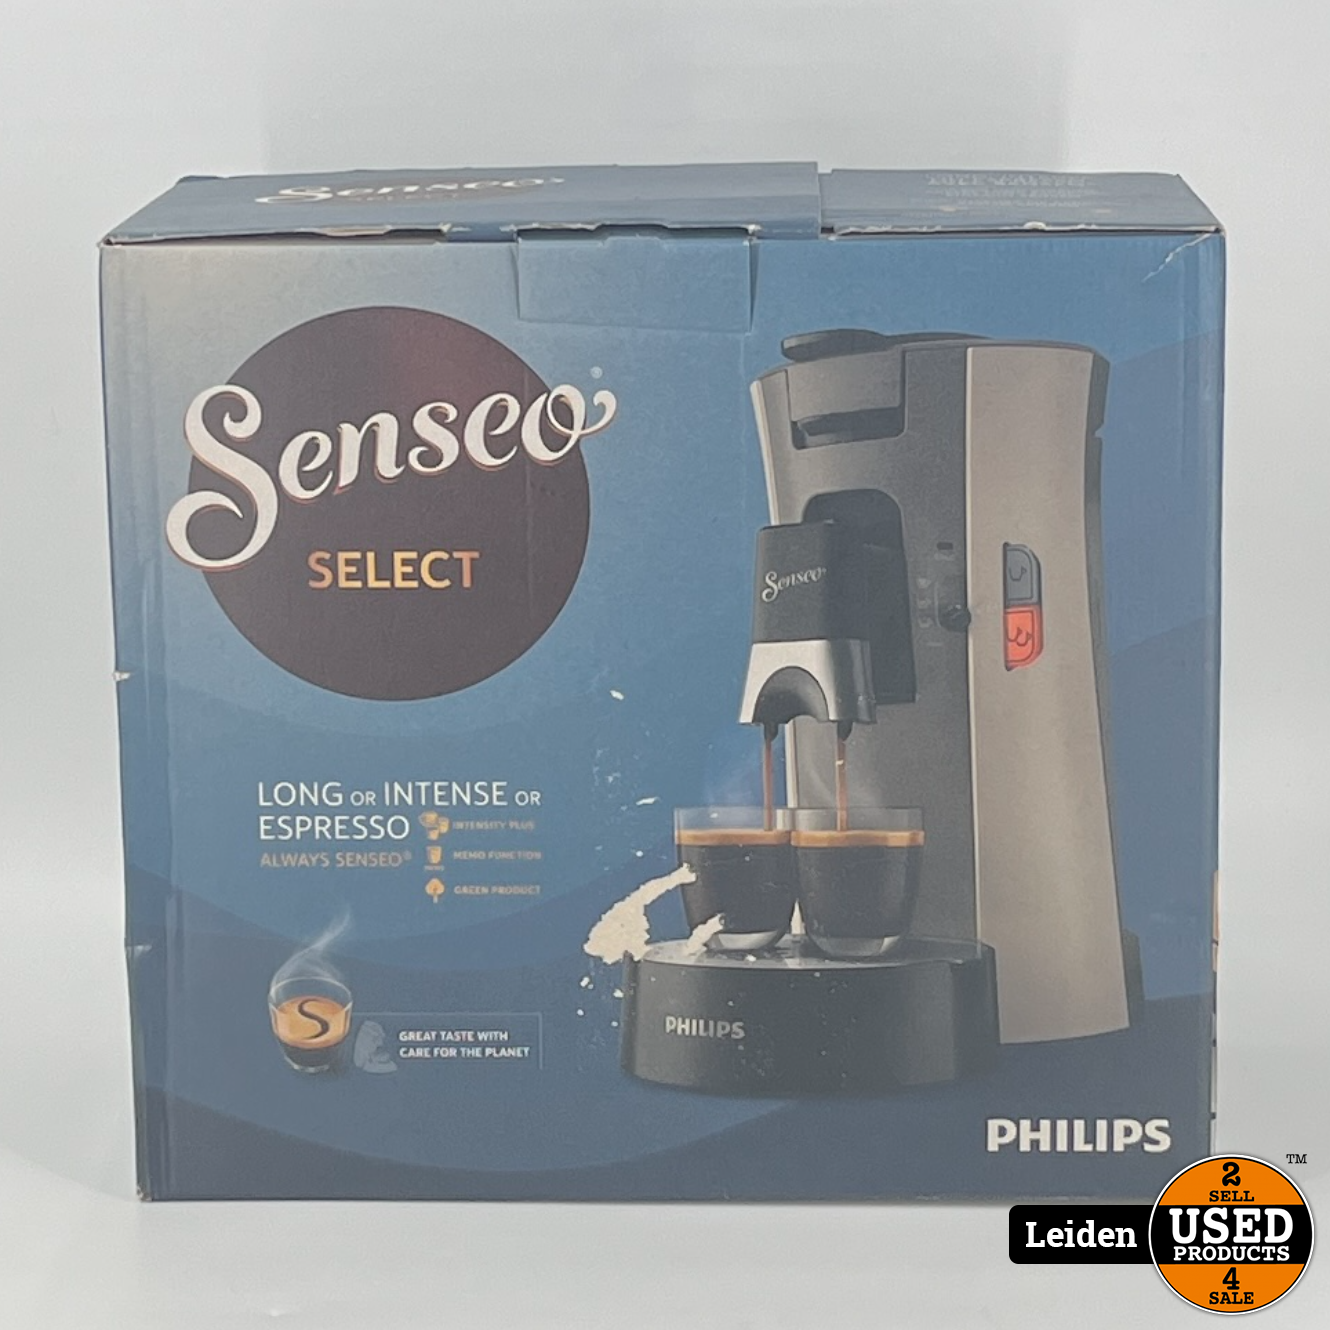 compressie Omtrek Bewustzijn Philips CSA240/30 Senseo Select Koffiepadmachine Beige/Grijs (NIEUW uit  doos) - Used Products Leiden